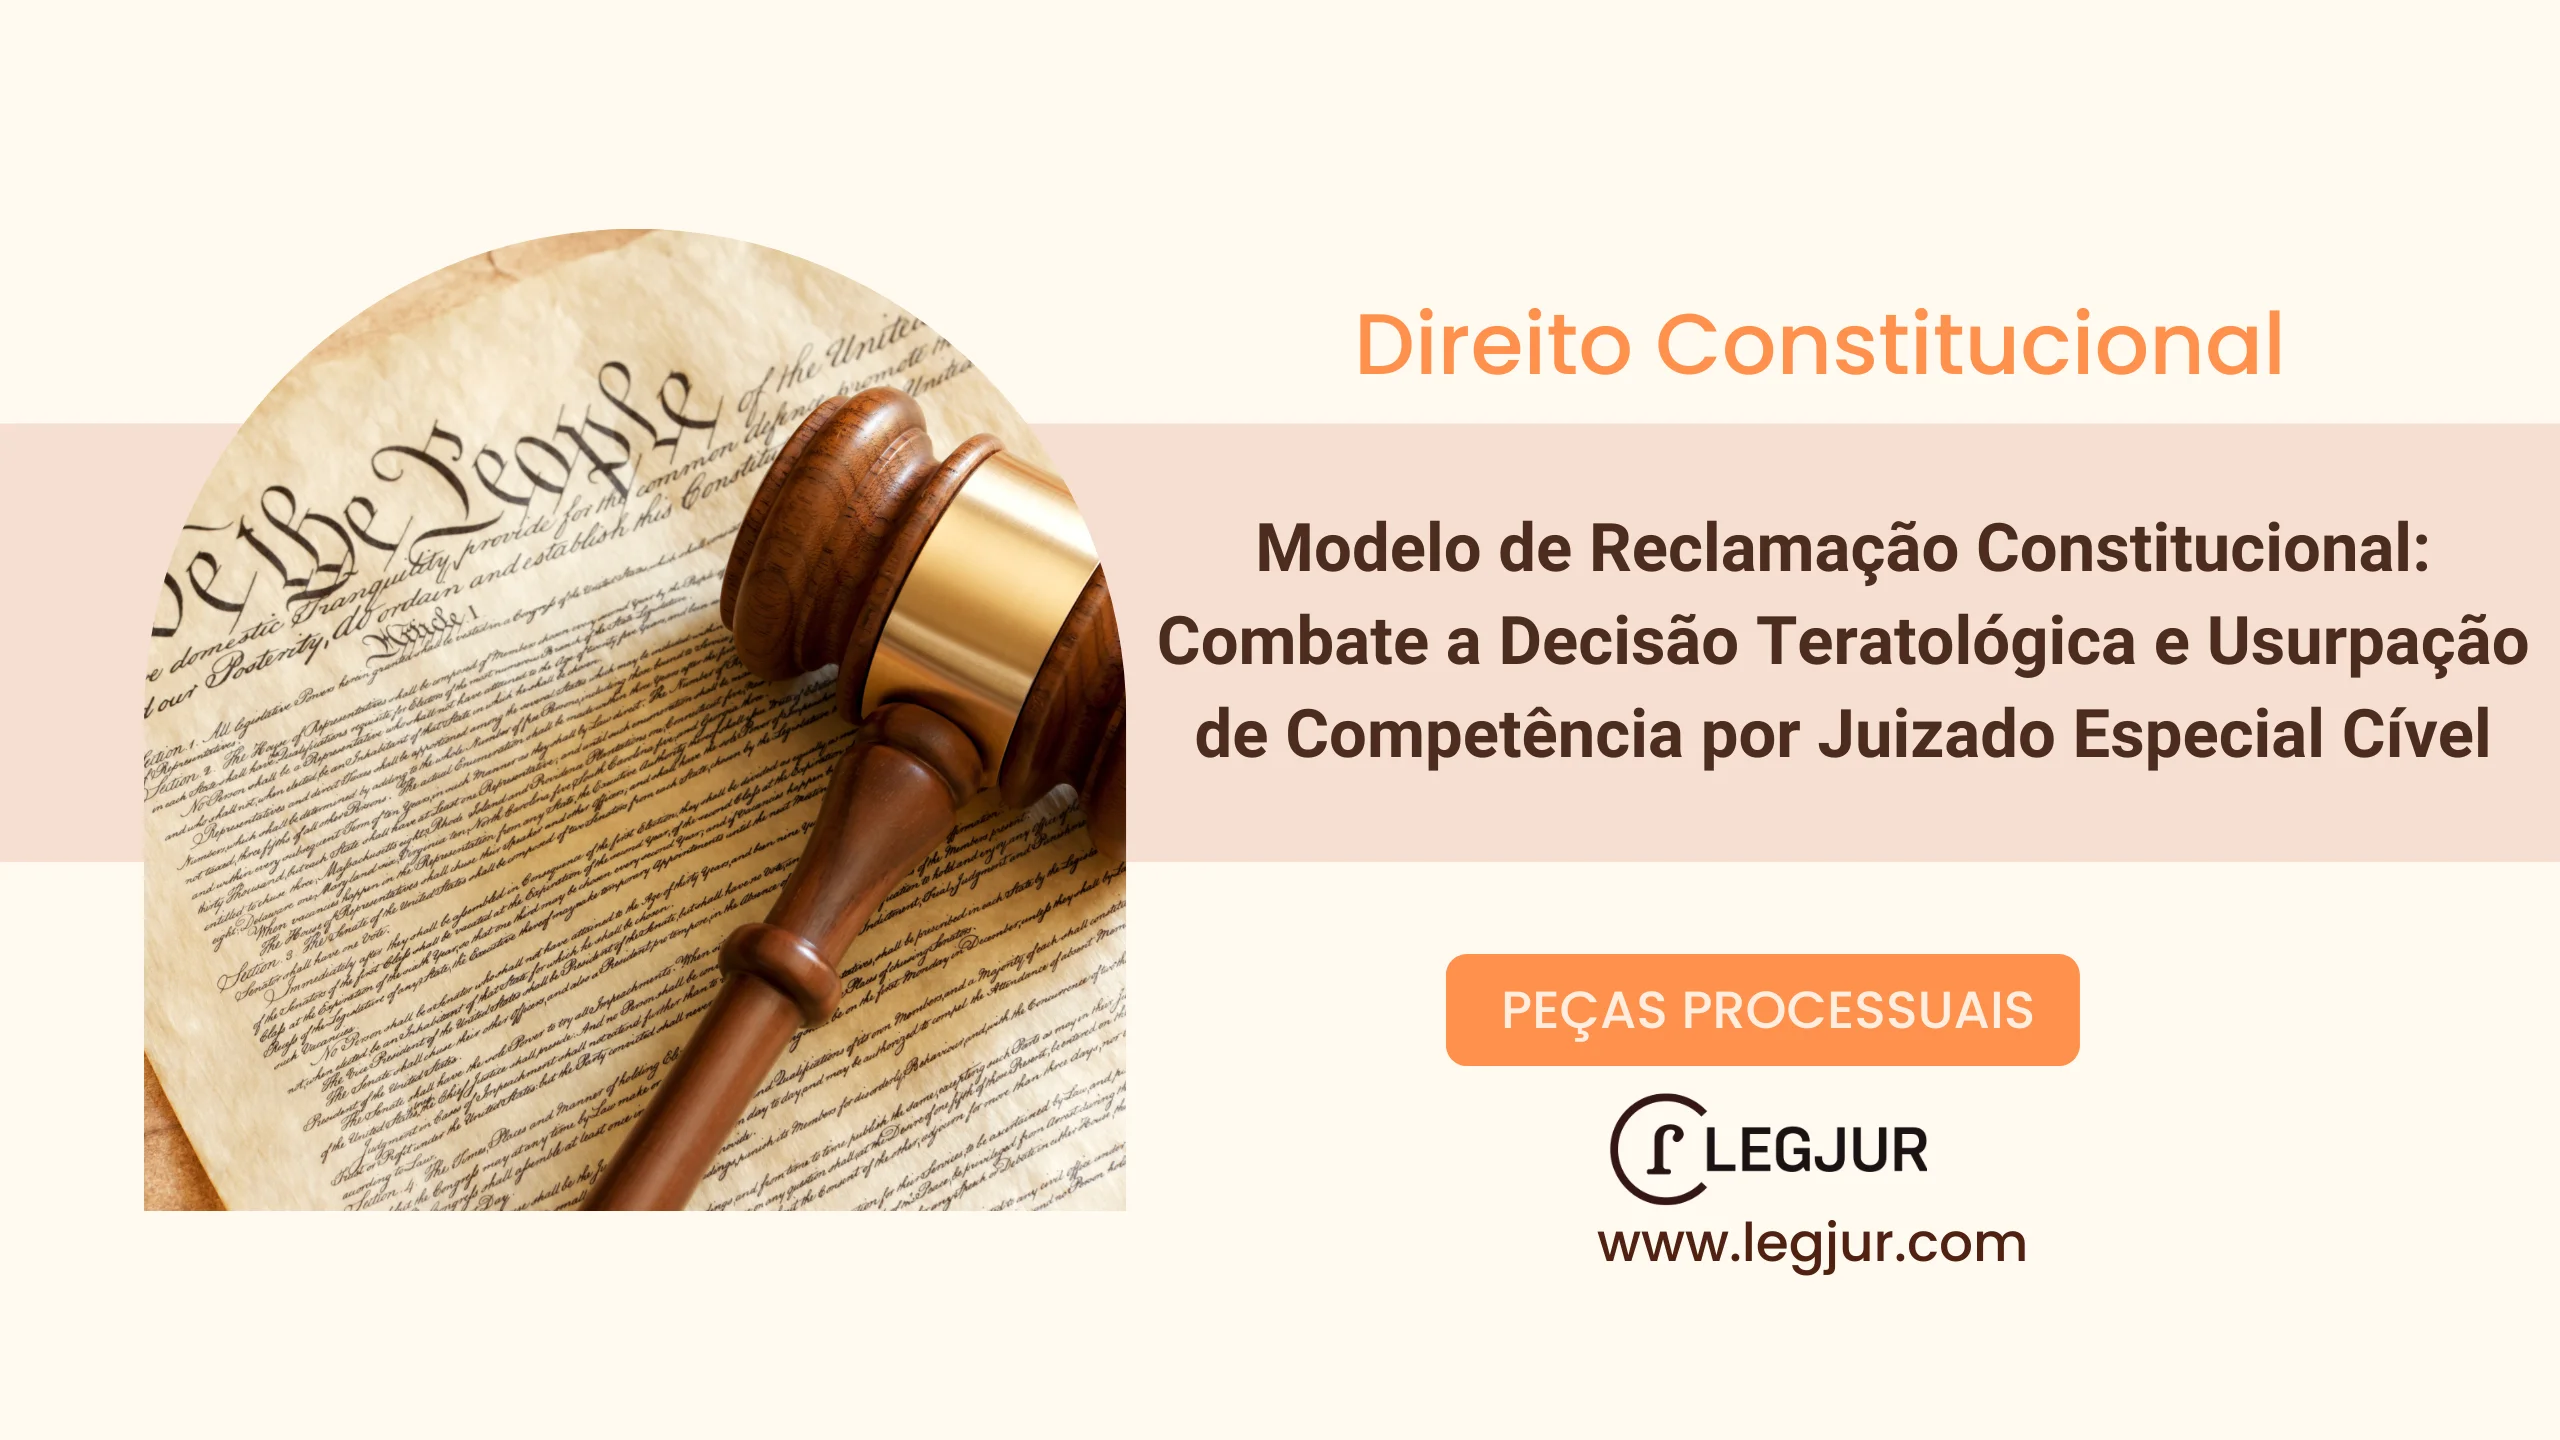 Modelo de Reclamação Constitucional: Combate a Decisão Teratológica e Usurpação de Competência por Juizado Especial Cível